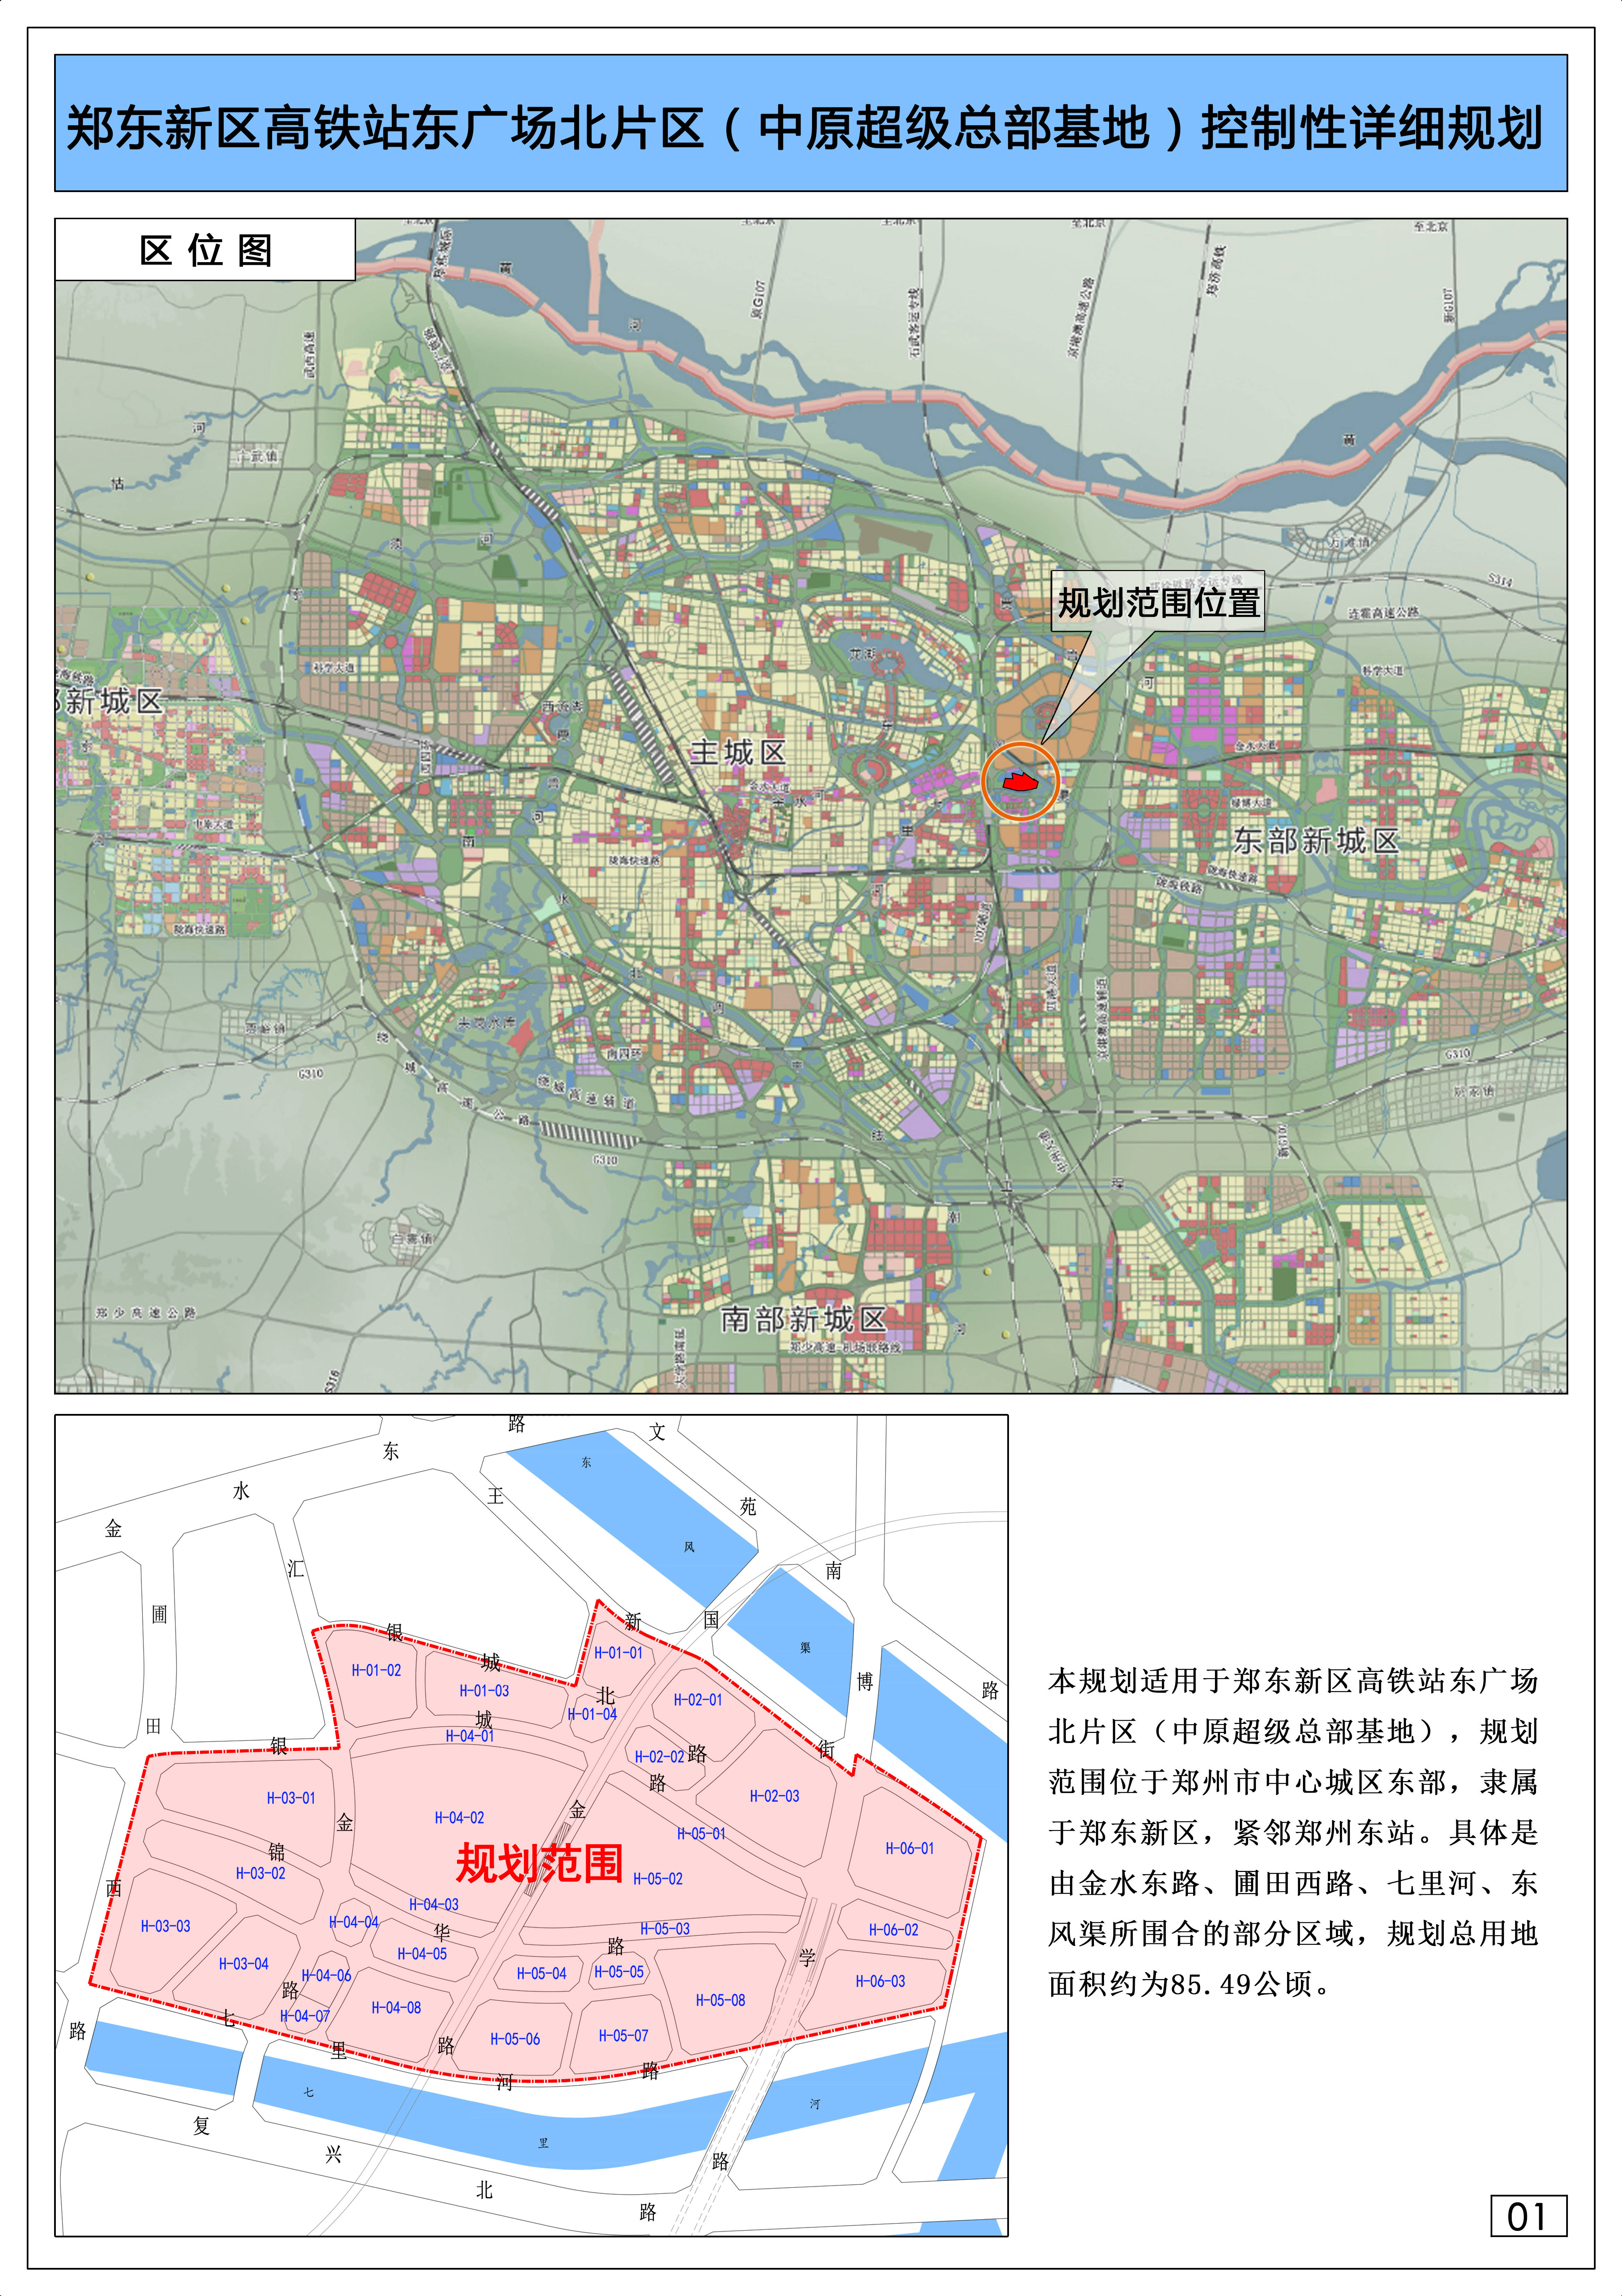 规划范围为郑州市区的东部,隶属于郑东新区,紧邻郑州高铁东站